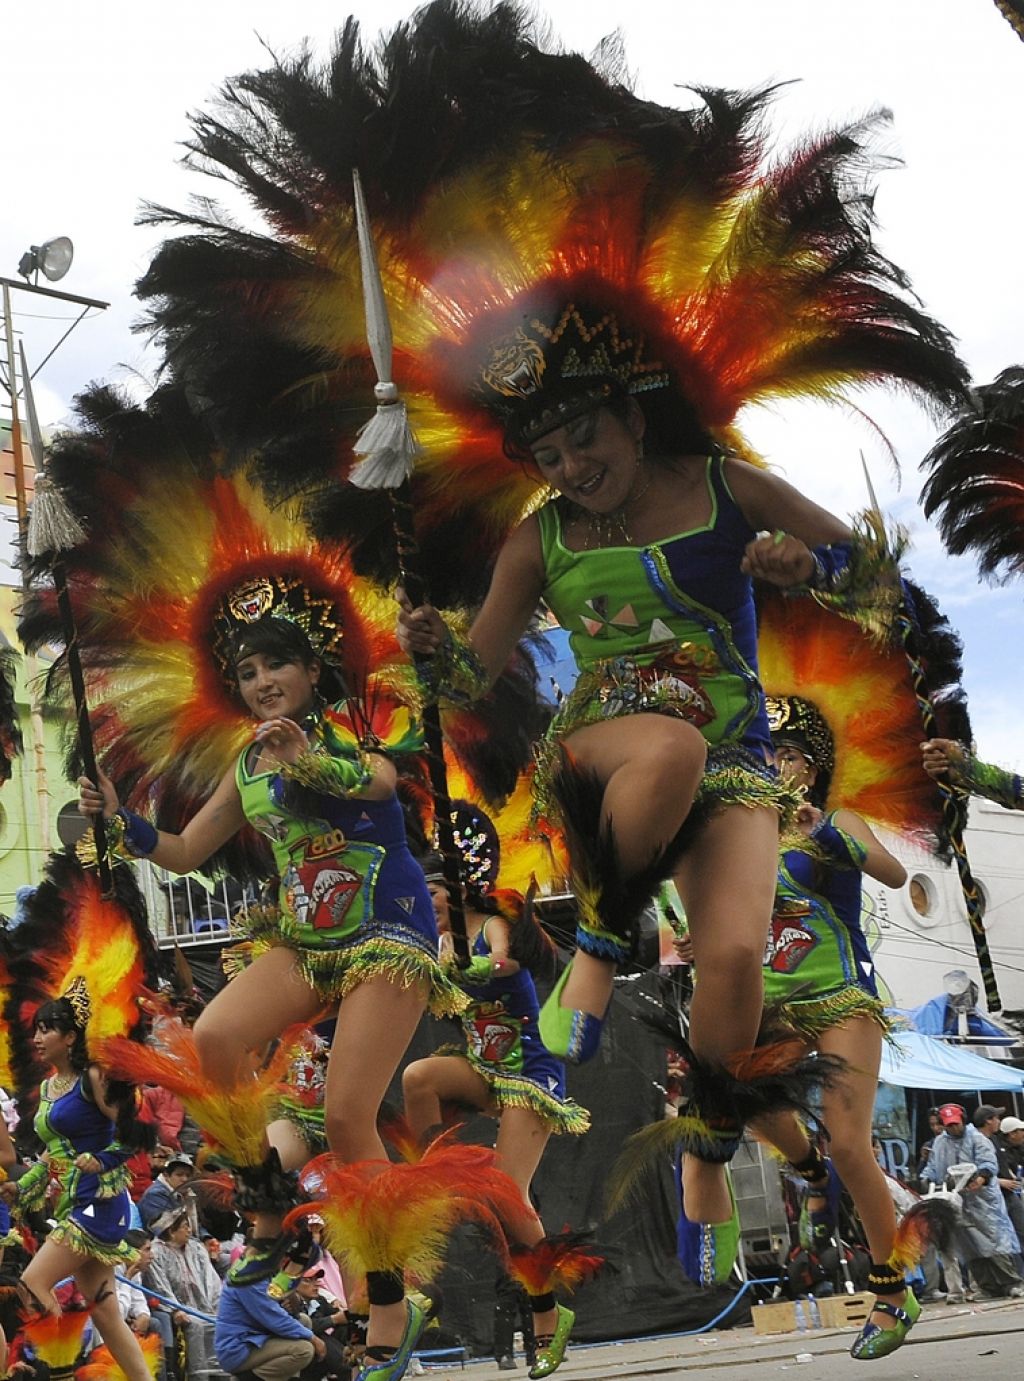 Nedelja v znamenju karnevalov